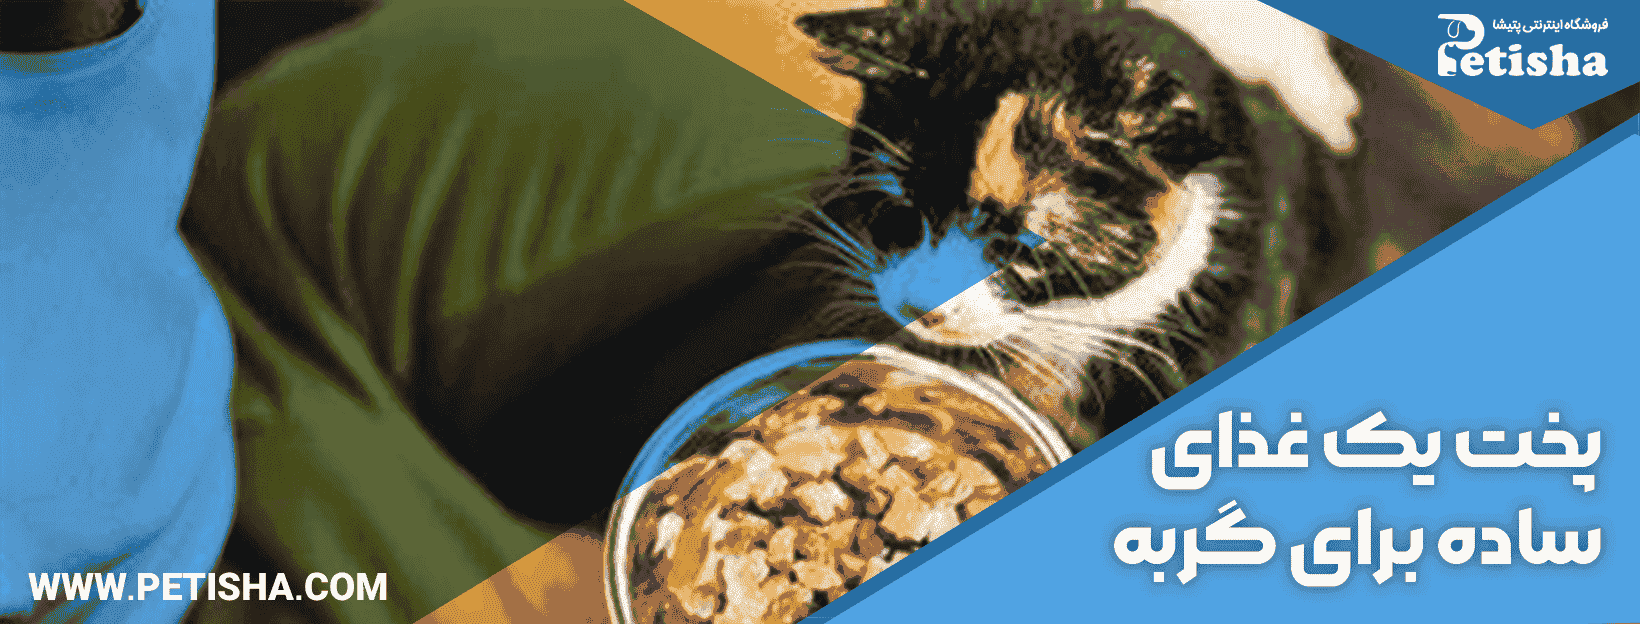 درست کردن غذای خانگی برای گربه | نحوه درست کردن غذای خانگی برای گربه